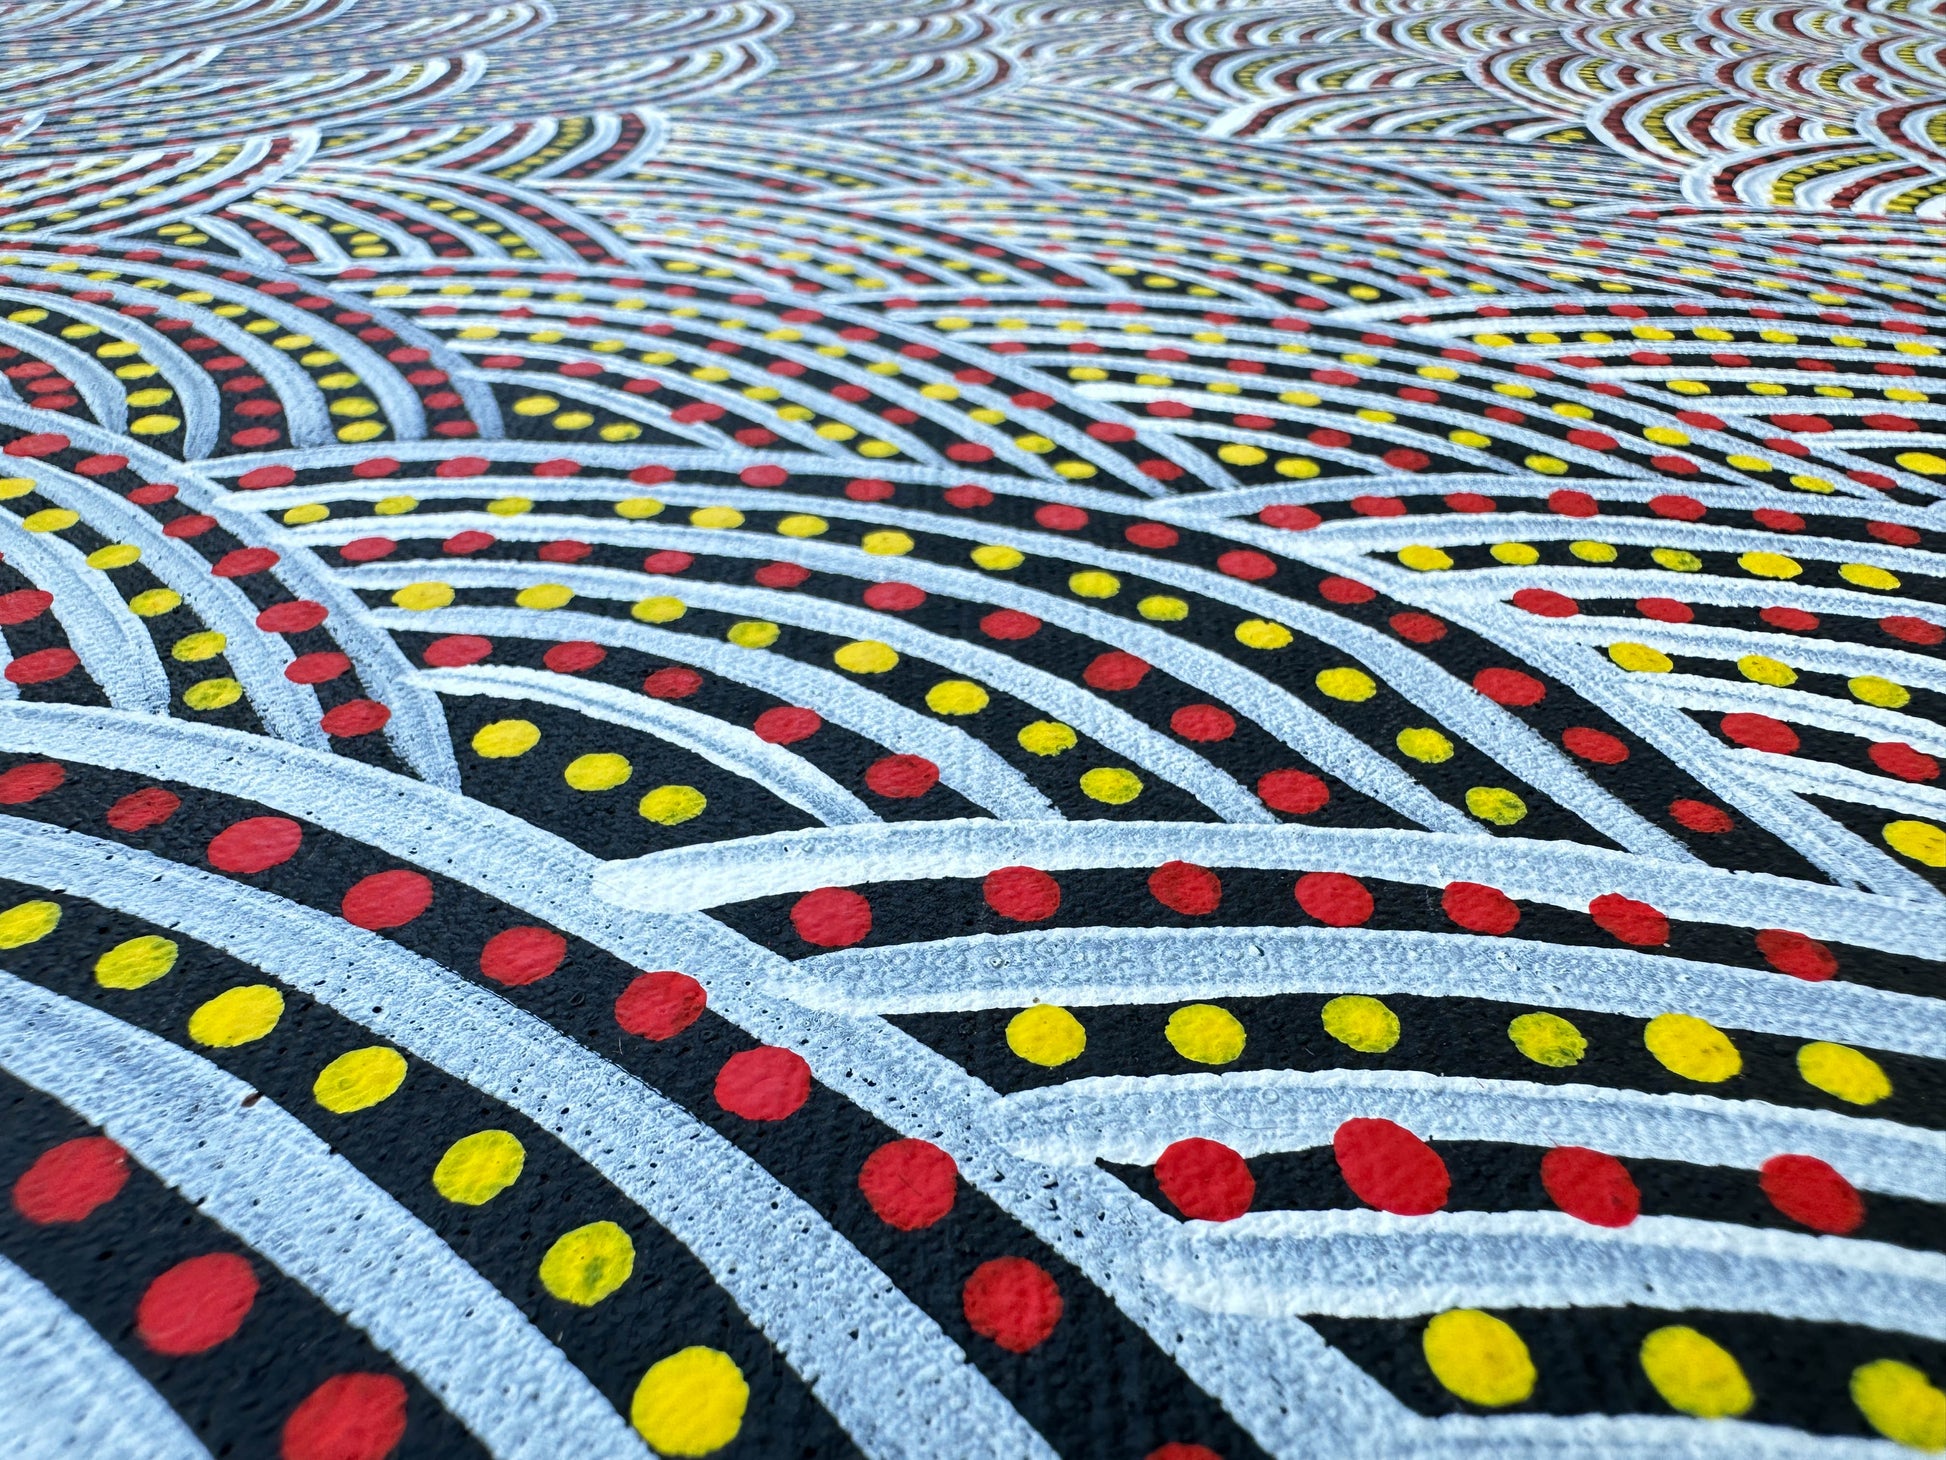 Patricia Kamara Rambler + Utopia + Aboriginal Art + Indigenous Art + Australian Art + Art for Sale + artwork for sale + painting for sale + Darwin based gallery + Dot artwork + Dot painting + body paint + women's ceremony + women's dreaming + altyerre aboriginal art + gallery